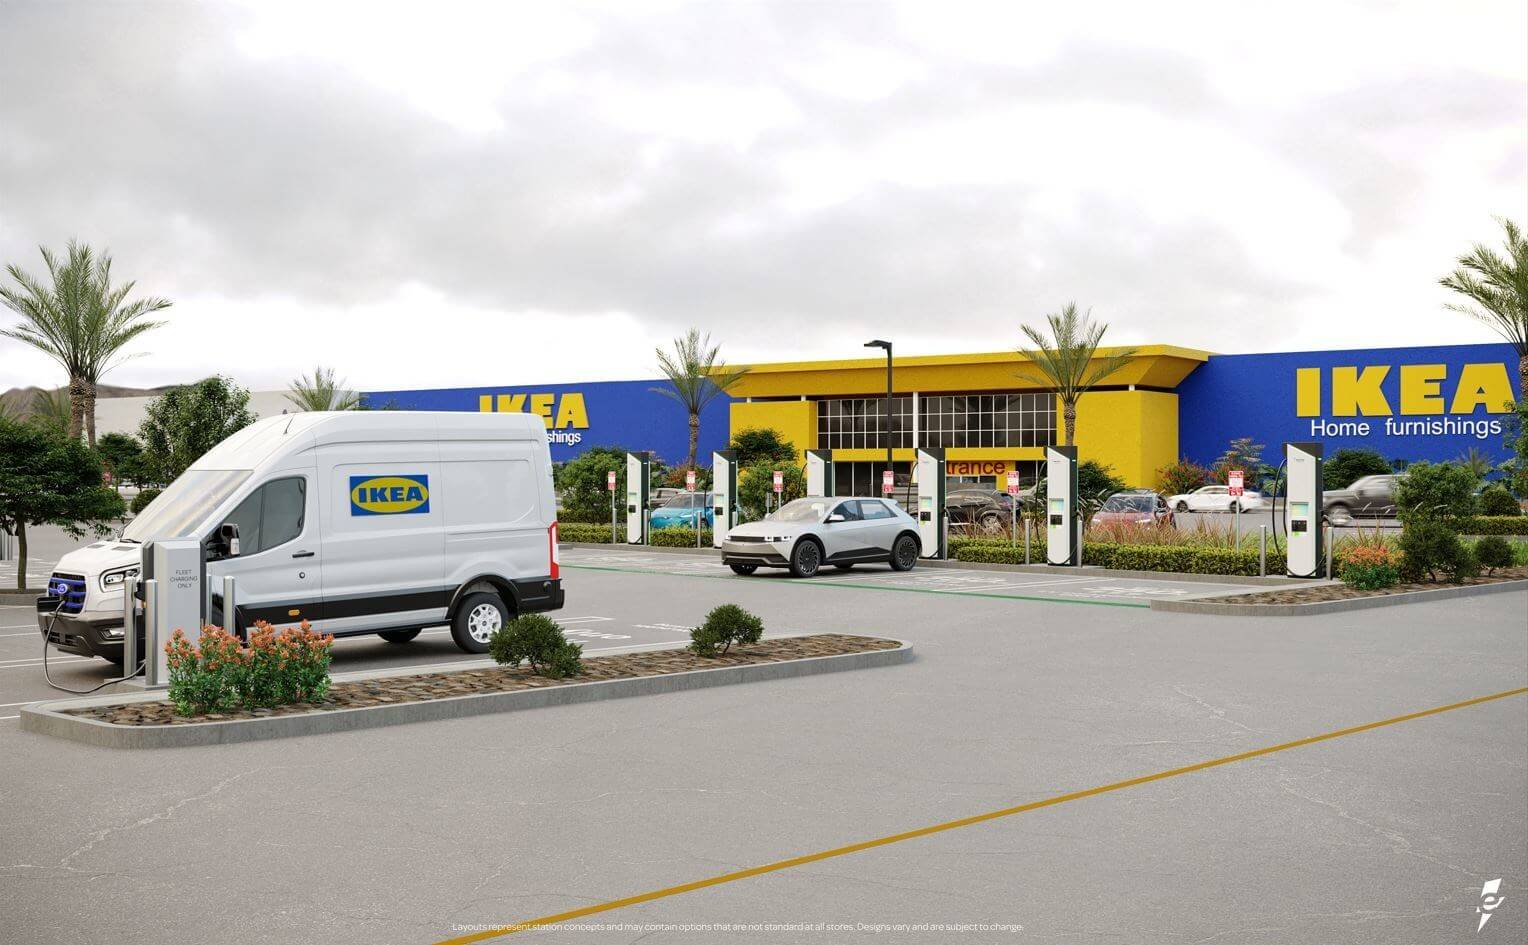 IKEA vervierfacht Ladestationen für Elektrofahrzeuge dank Partnerschaft mit Electrify America